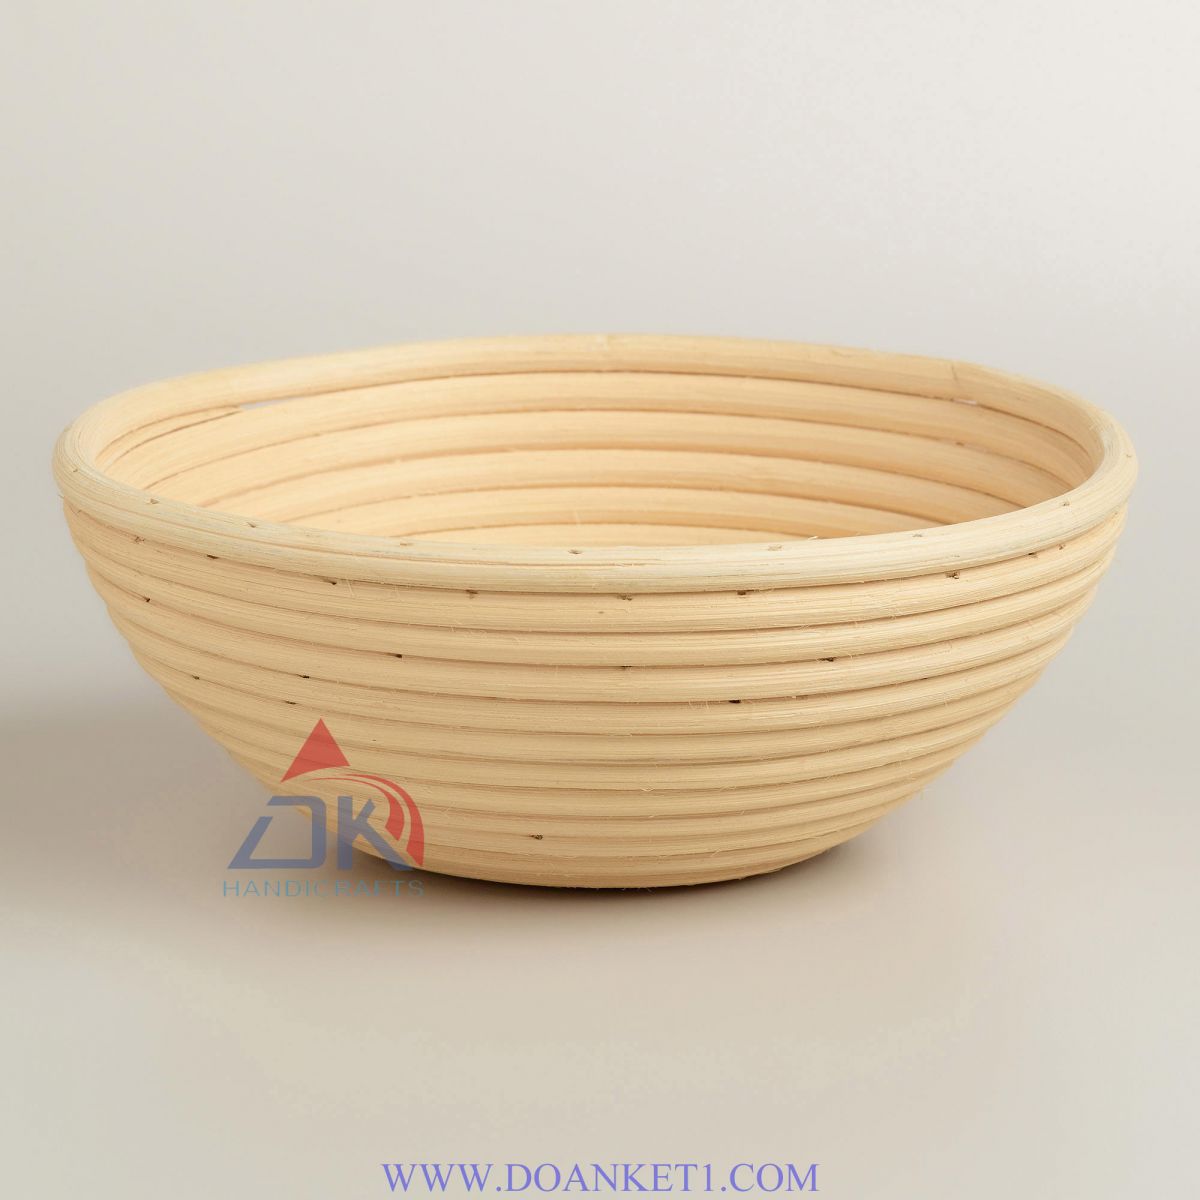 Rattan Bread Basket # DK134